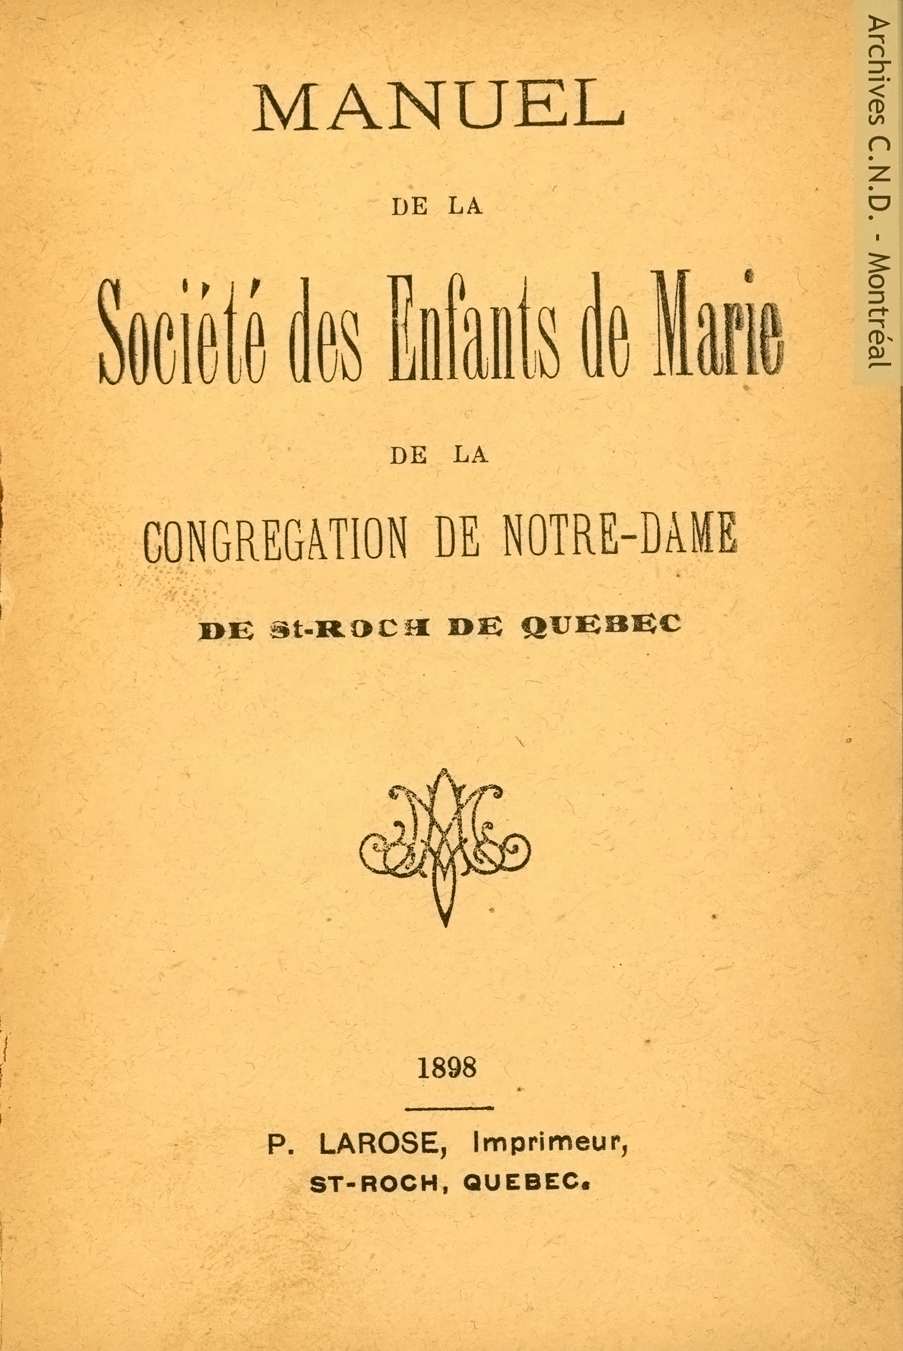 Page frontispice du manuel de la Société des enfants de Marie de la Congrégation de Notre-Dame de Saint-Roch